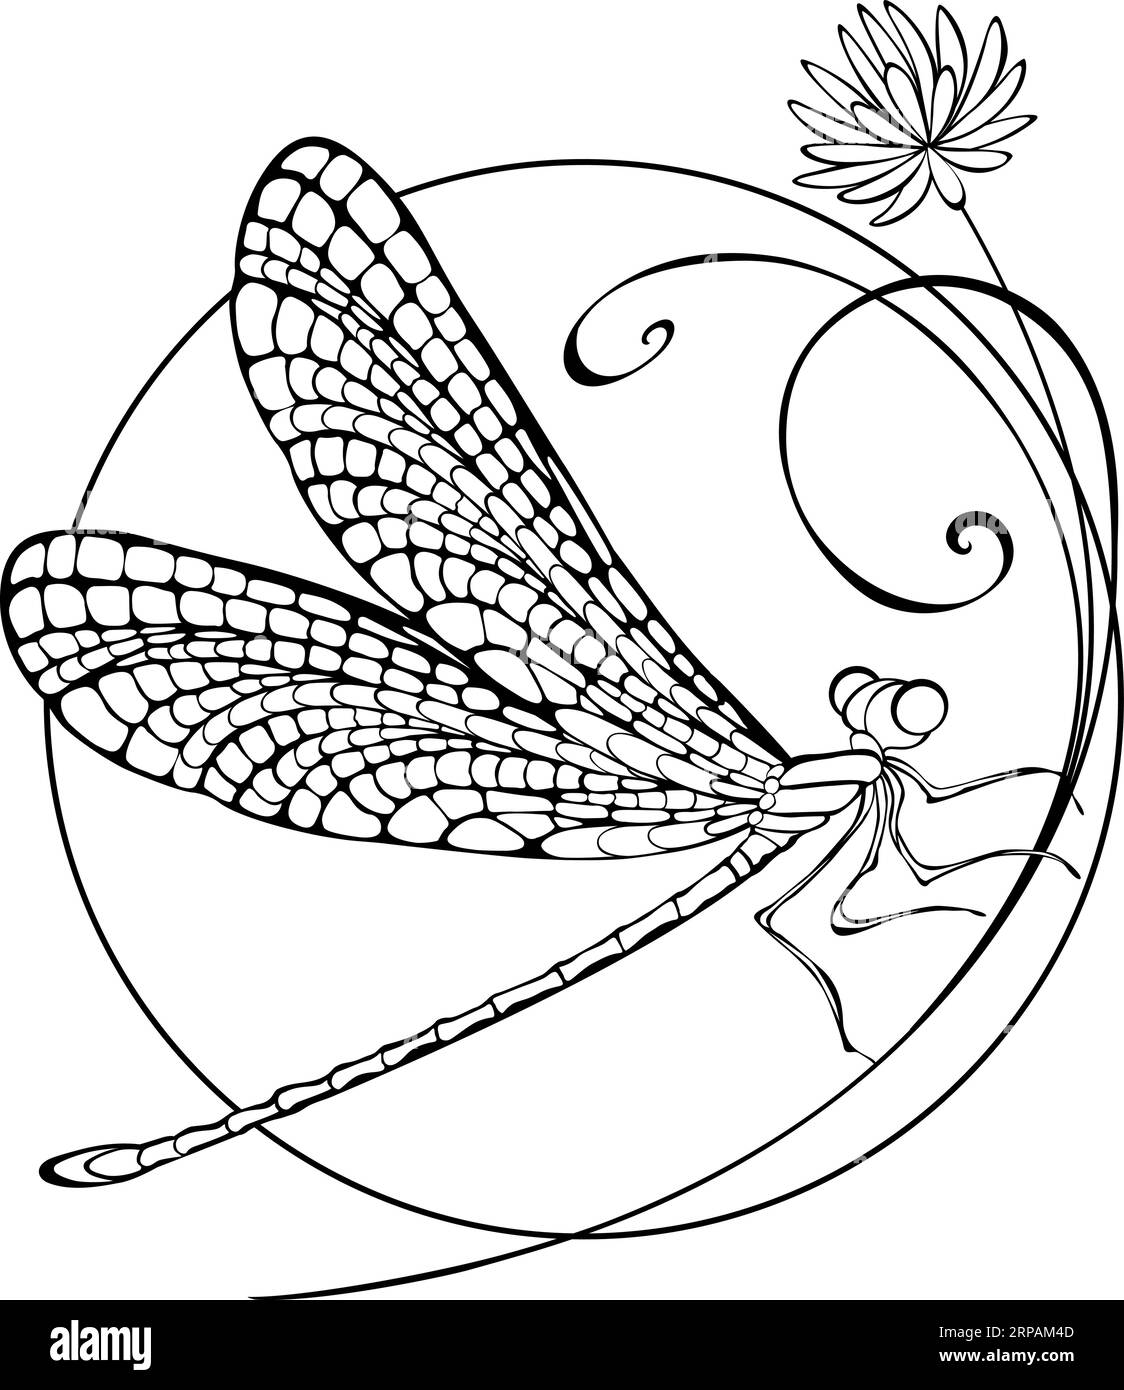 Seduto in cerchio su un sottile fiore selvatico, disegnato artisticamente e sagomato libellula con ali dettagliate su sfondo bianco. Decorazione. Illustrazione Vettoriale